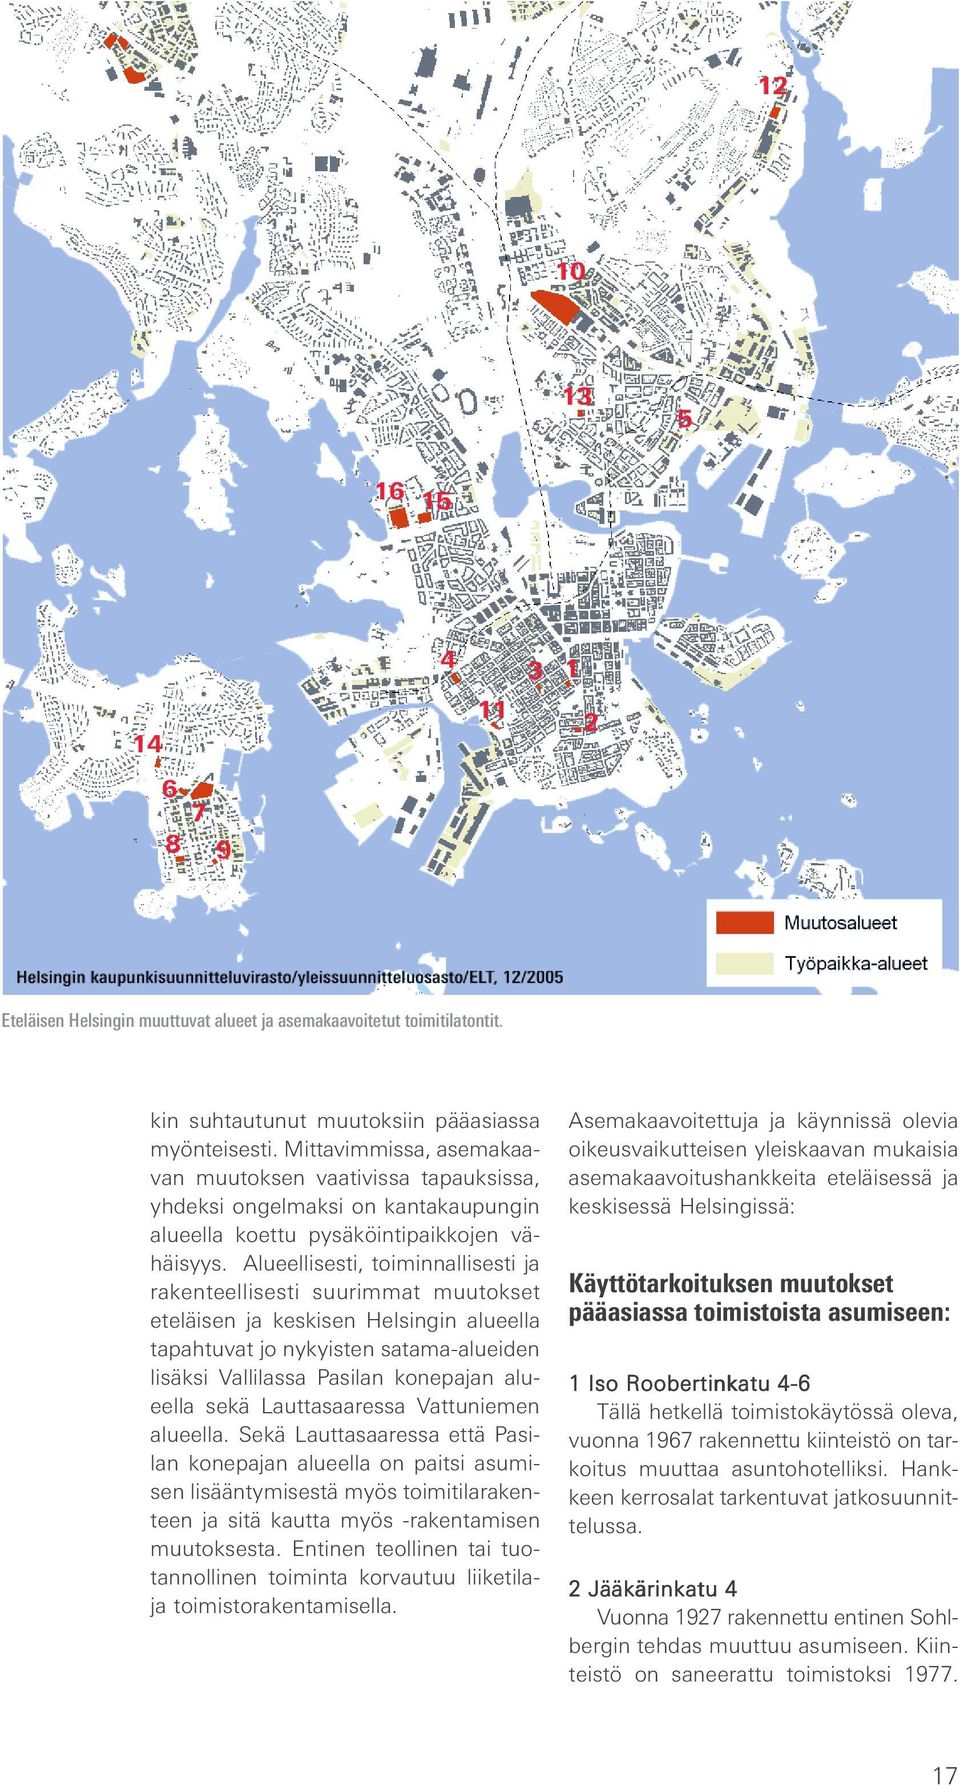 Alueellisesti, toiminnallisesti ja rakenteellisesti suurimmat muutokset eteläisen ja keskisen Helsingin alueella tapahtuvat jo nykyisten satama-alueiden lisäksi Vallilassa Pasilan konepajan alueella